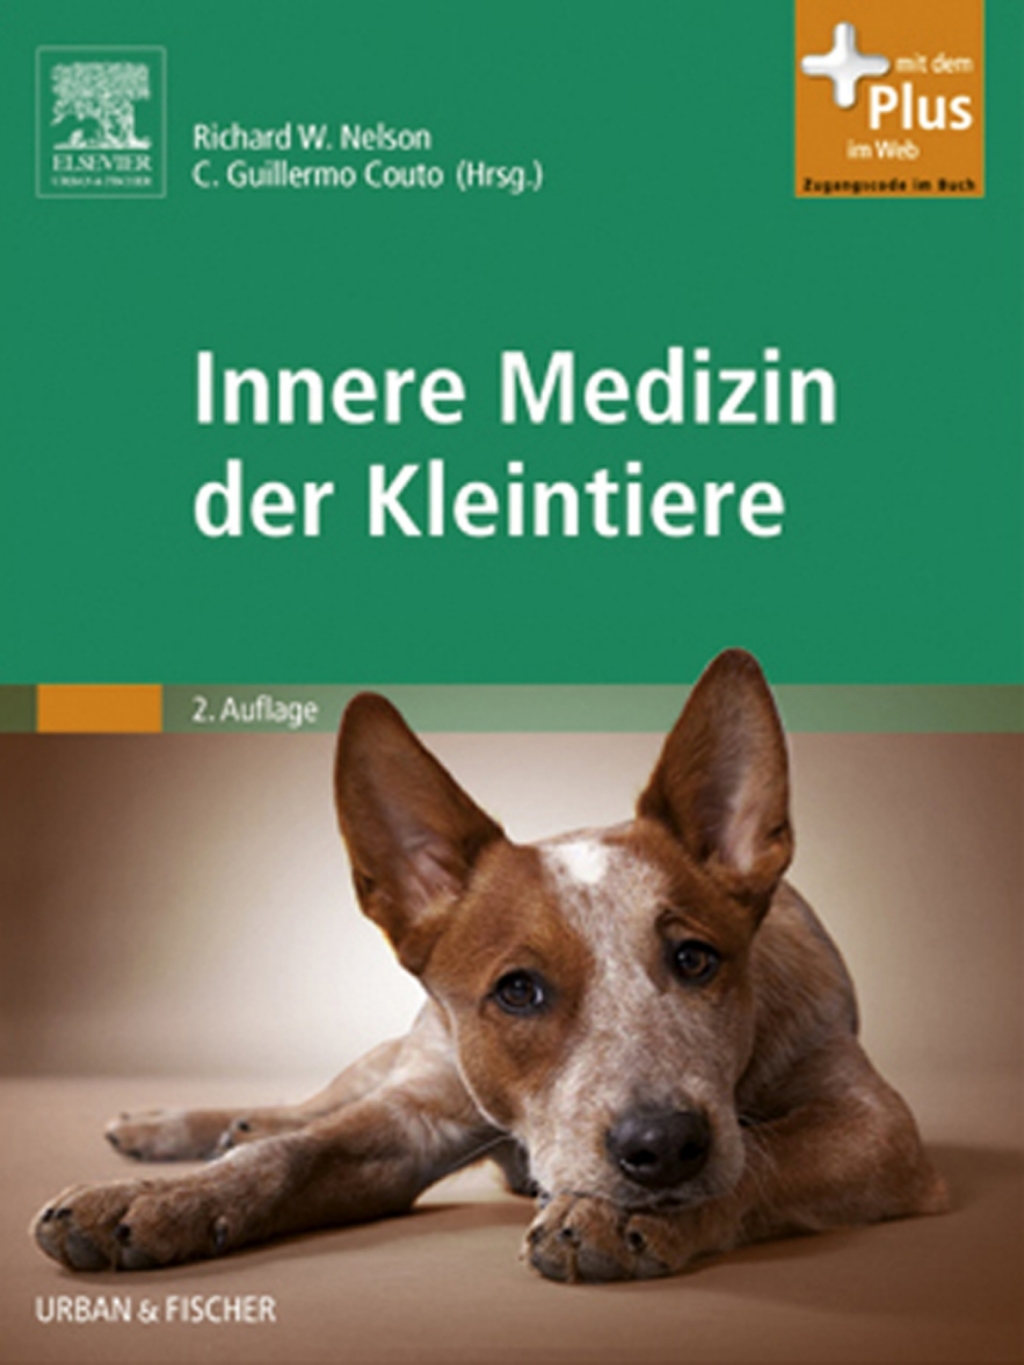 Innere Medizin der Kleintiere (eBook)